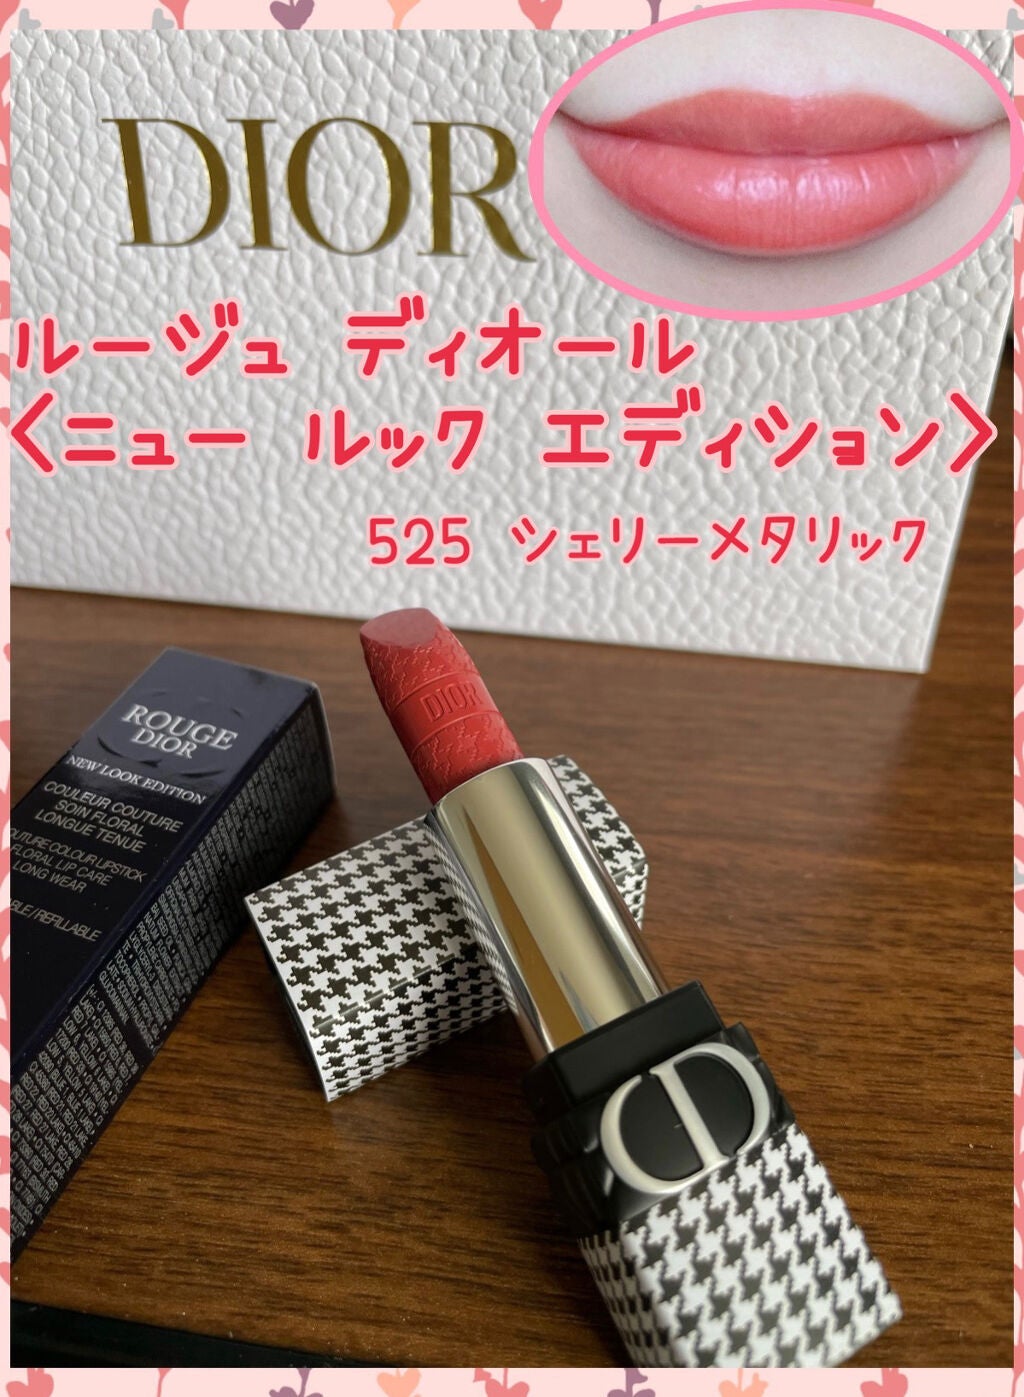 【新品未使用】Dior ルージュディオール 525 千鳥